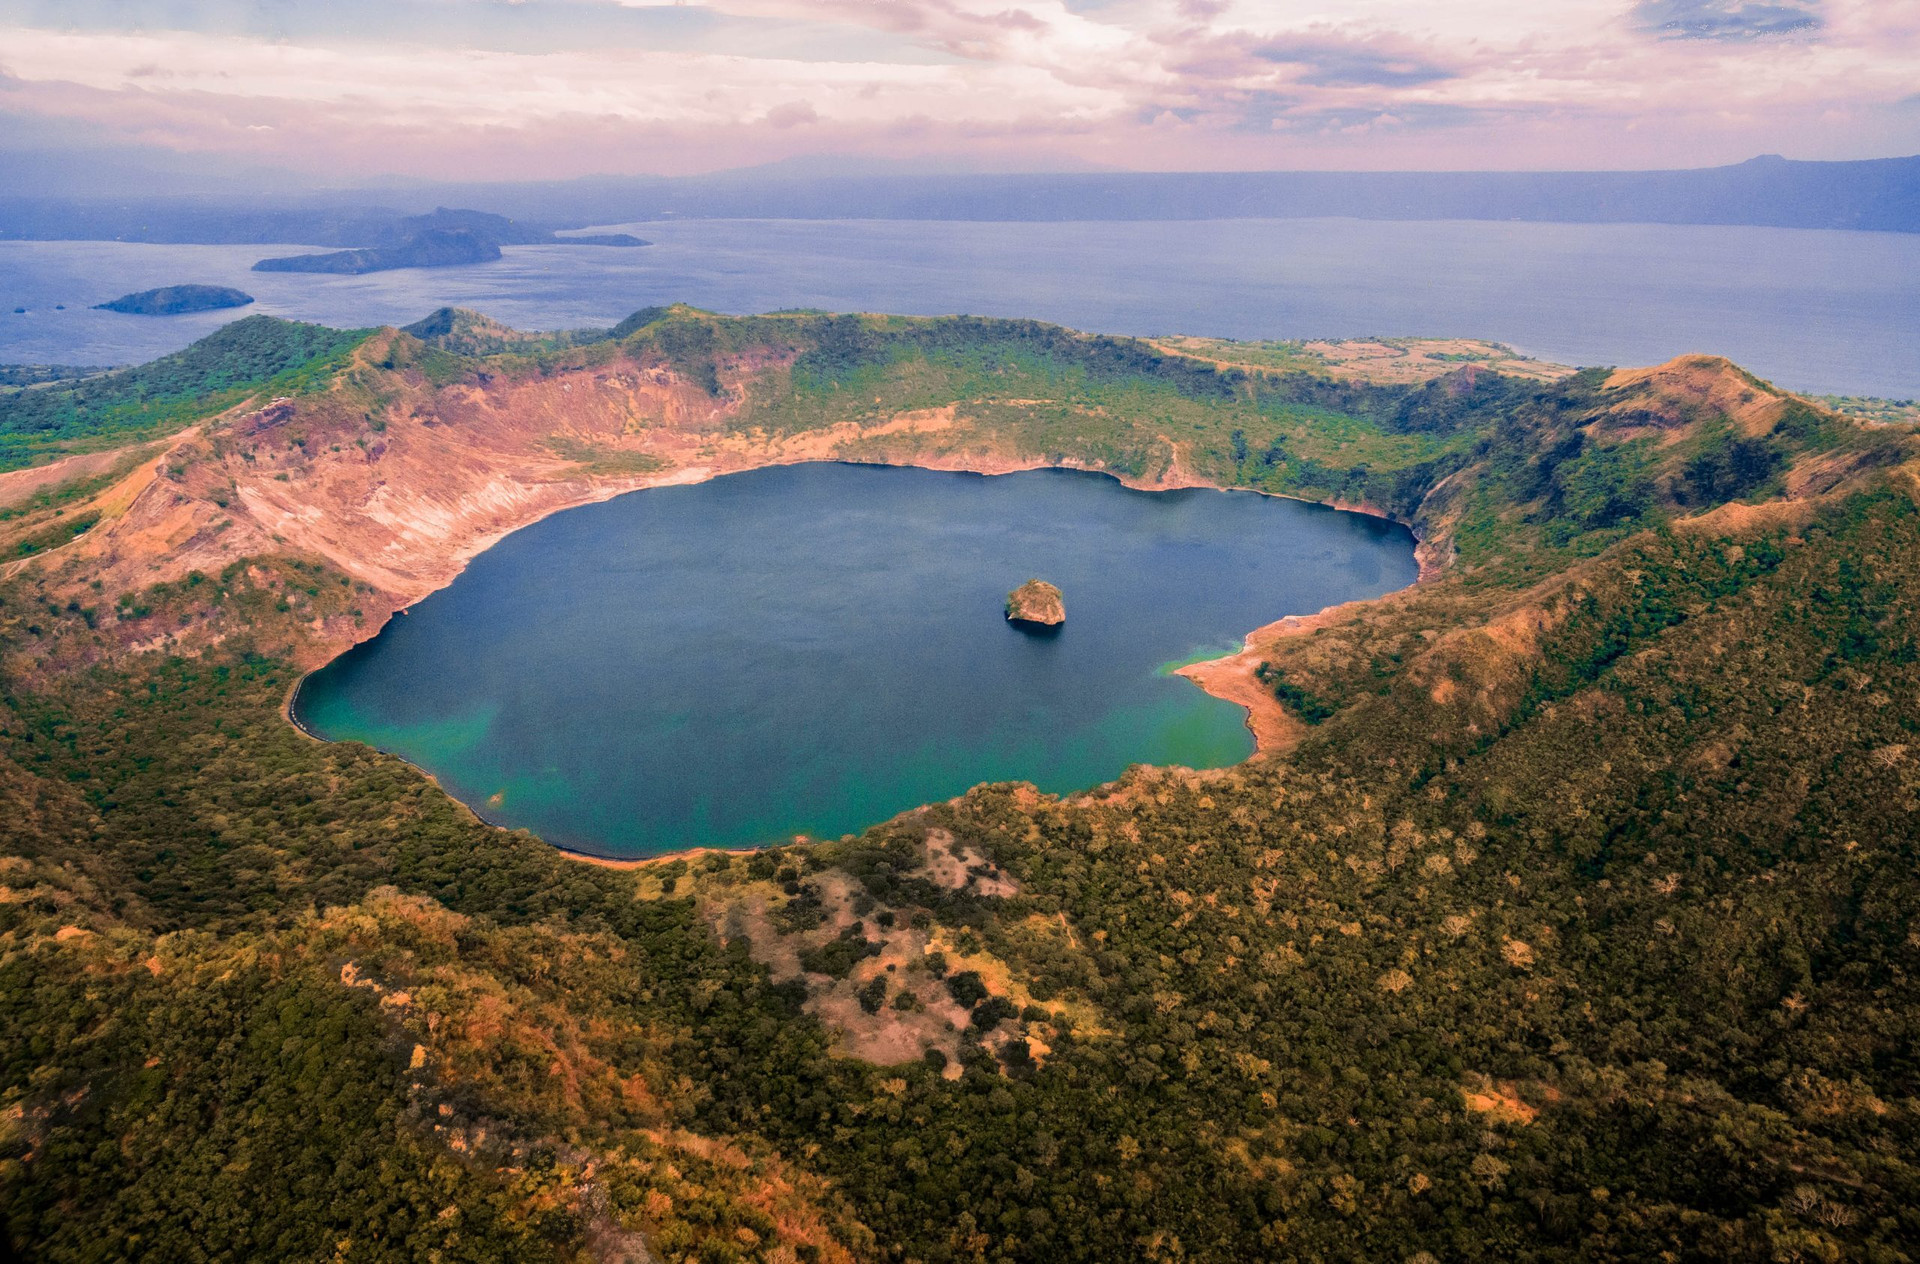 Hòn đảo hiếm hoi trên thế giới có hồ nằm trong hồ, đảo chồng đảo đầy ngoạn mục - 2